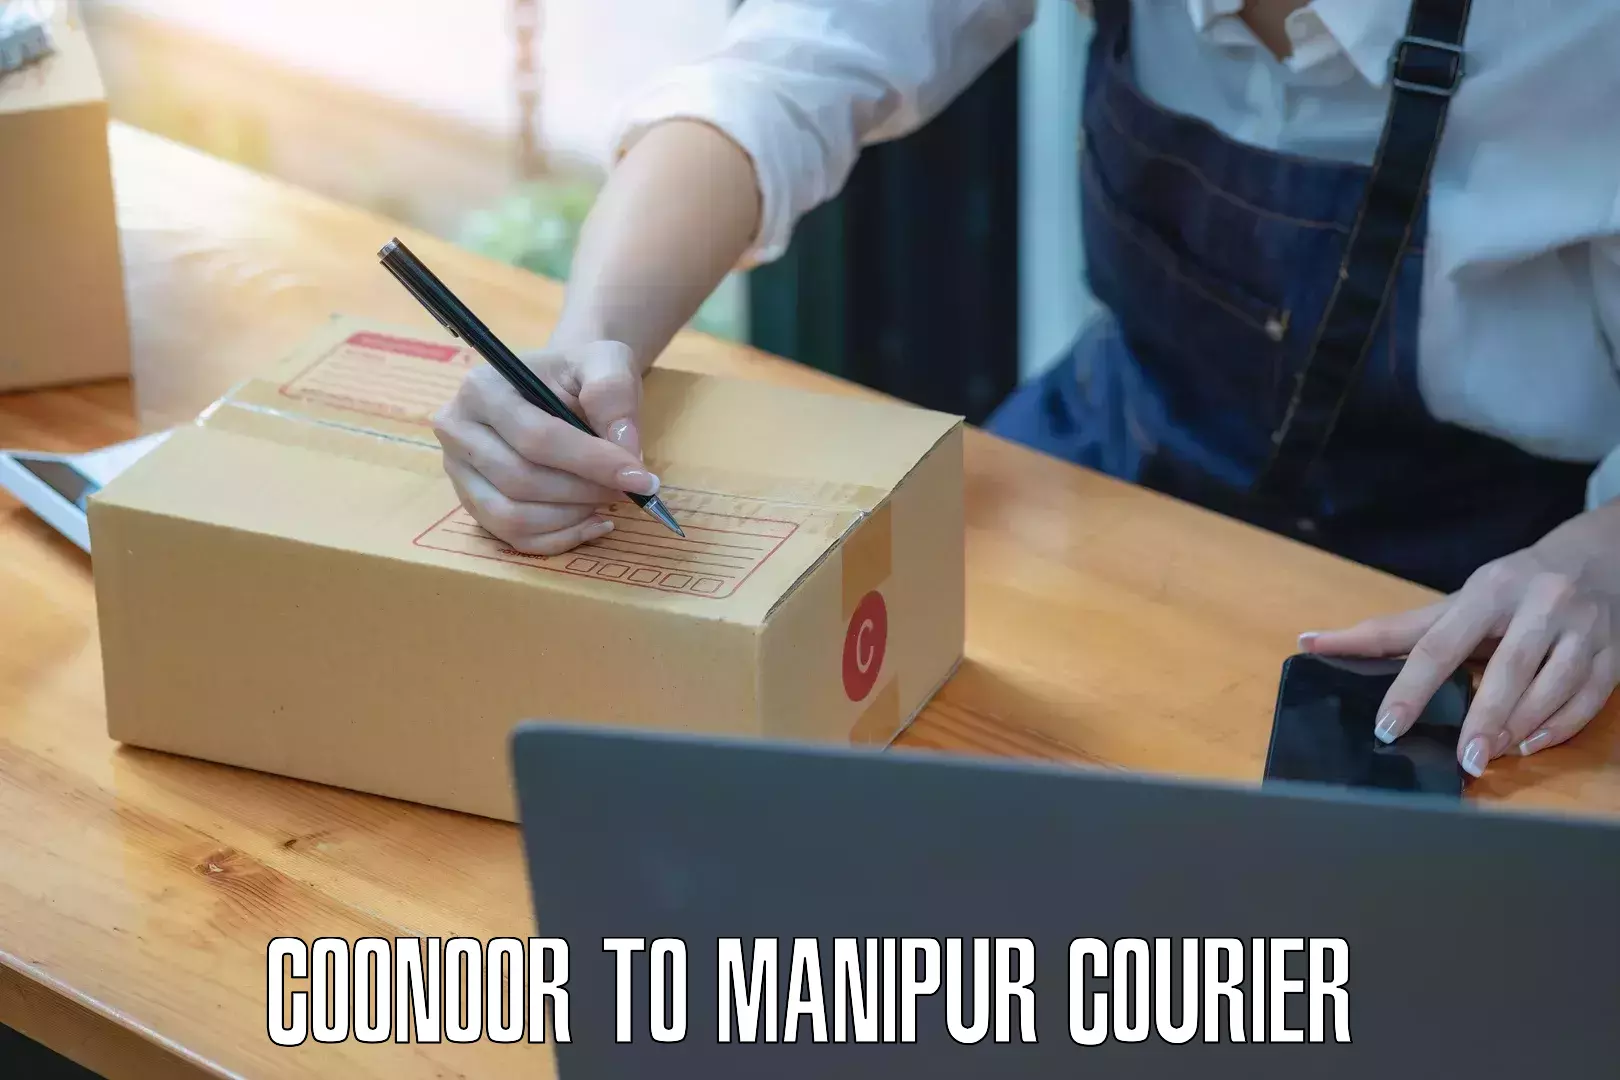 Courier service comparison Coonoor to IIIT Senapati